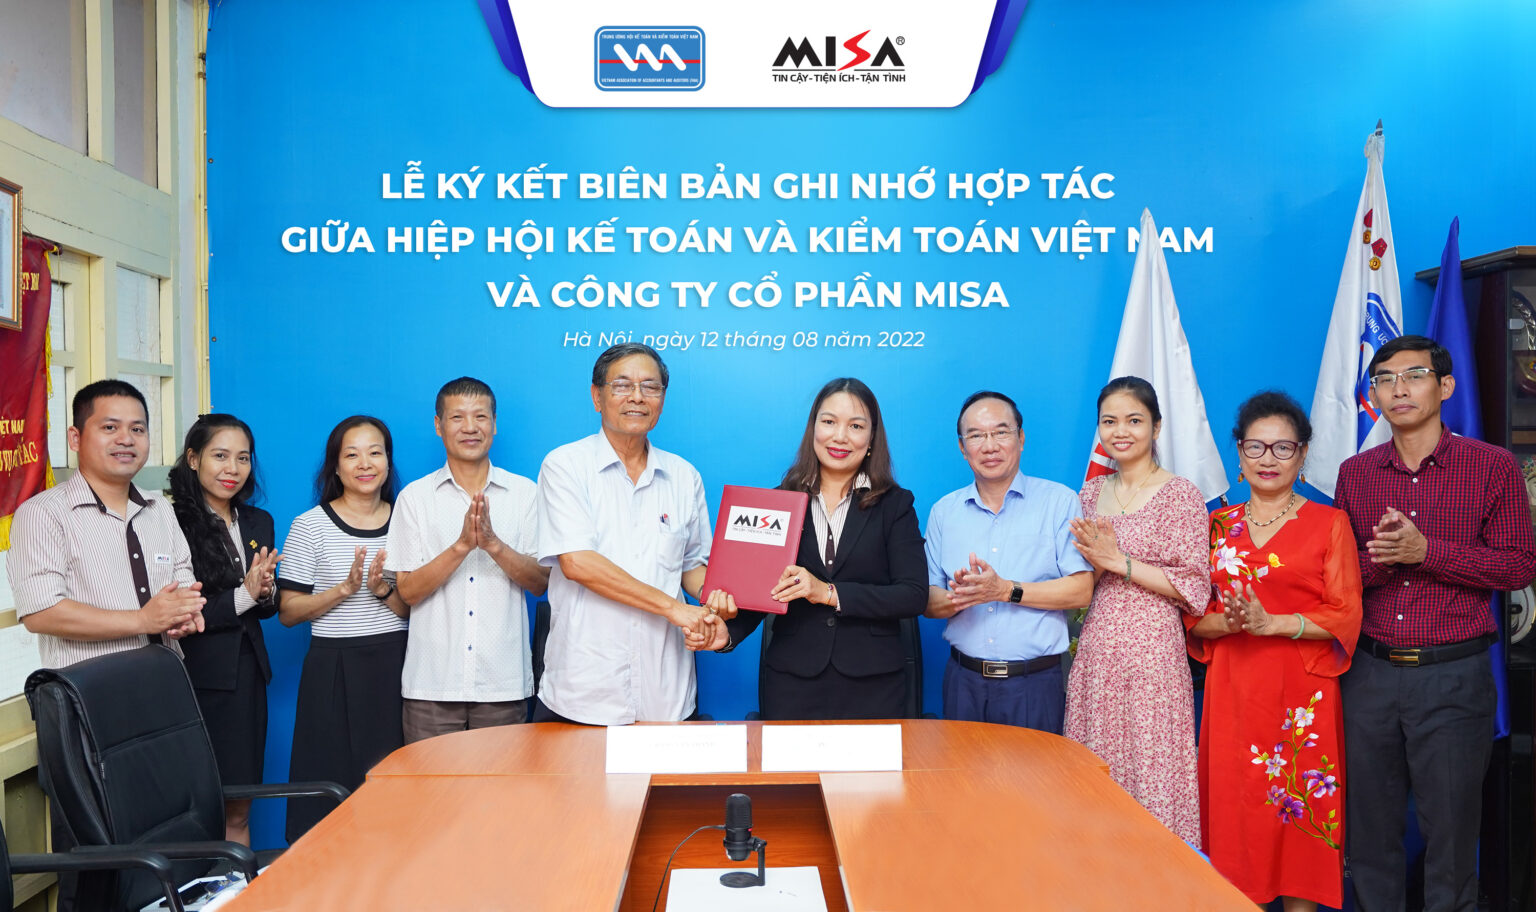 MISA ký biên bản ghi nhớ hợp tác với Hiệp hội Kế toán – Kiểm toán Việt Nam